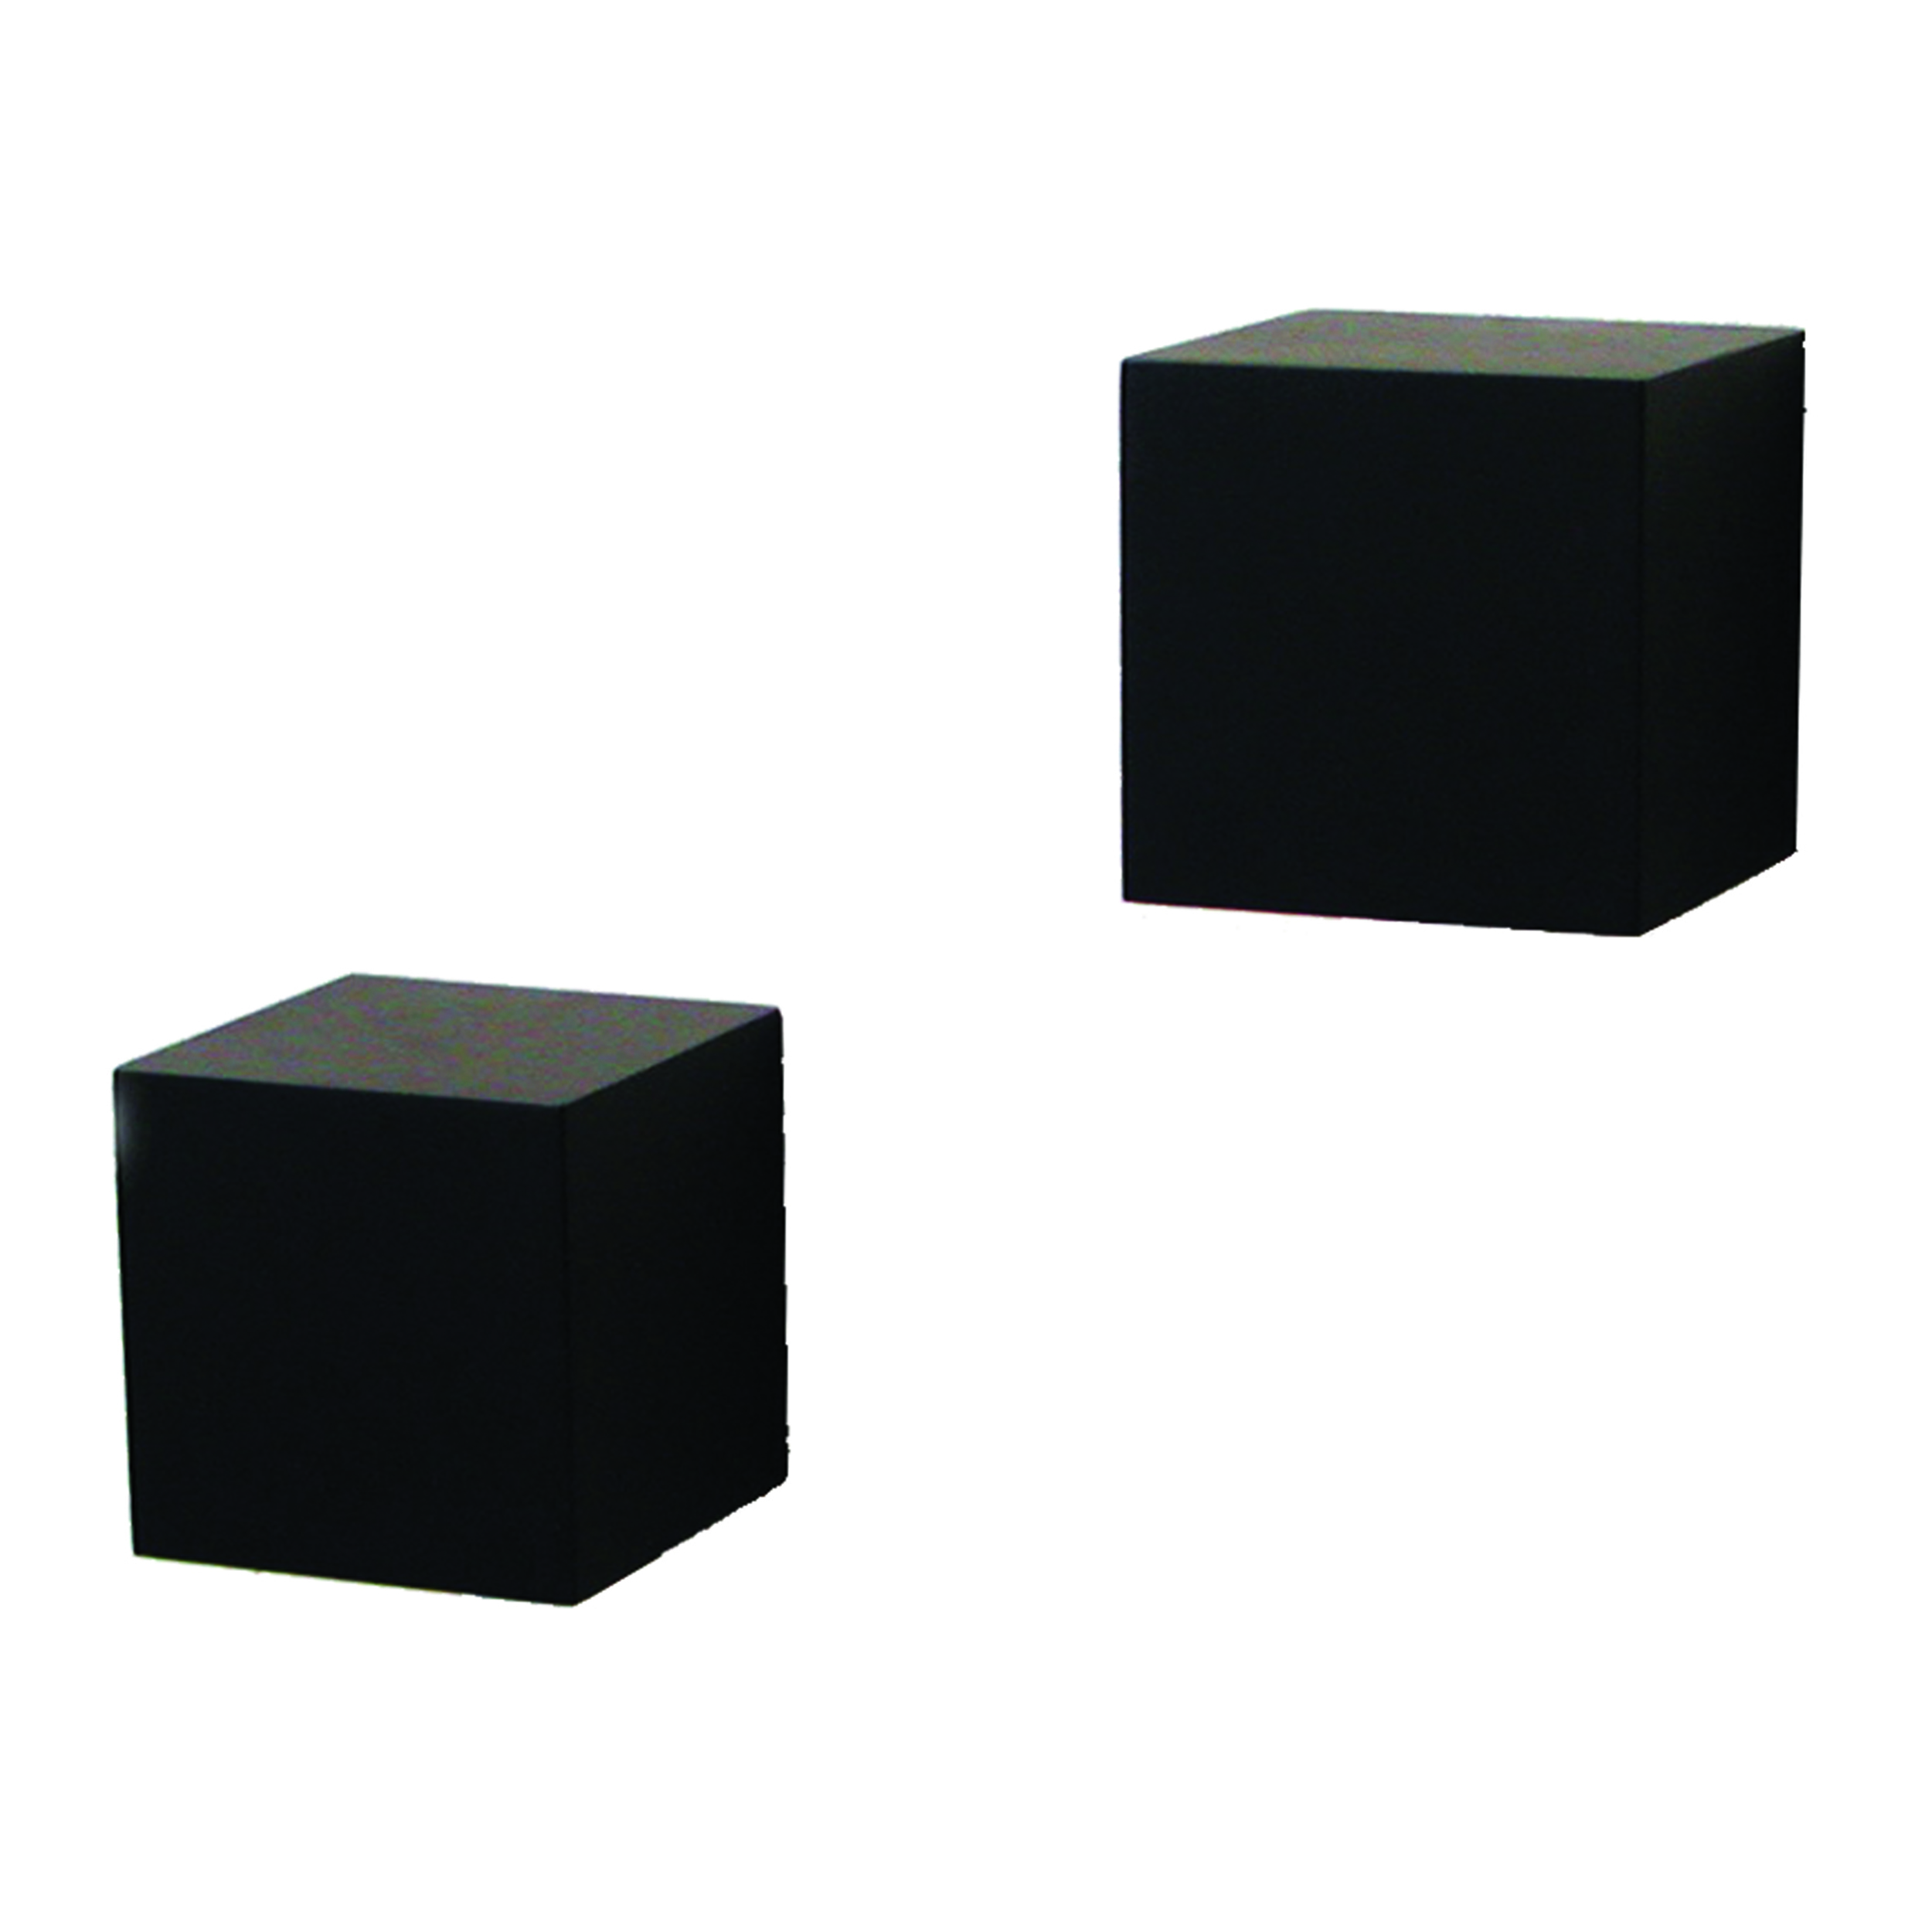 Knape & Vogt Decorative Wall Cubes, 1 Pair, Black Finish